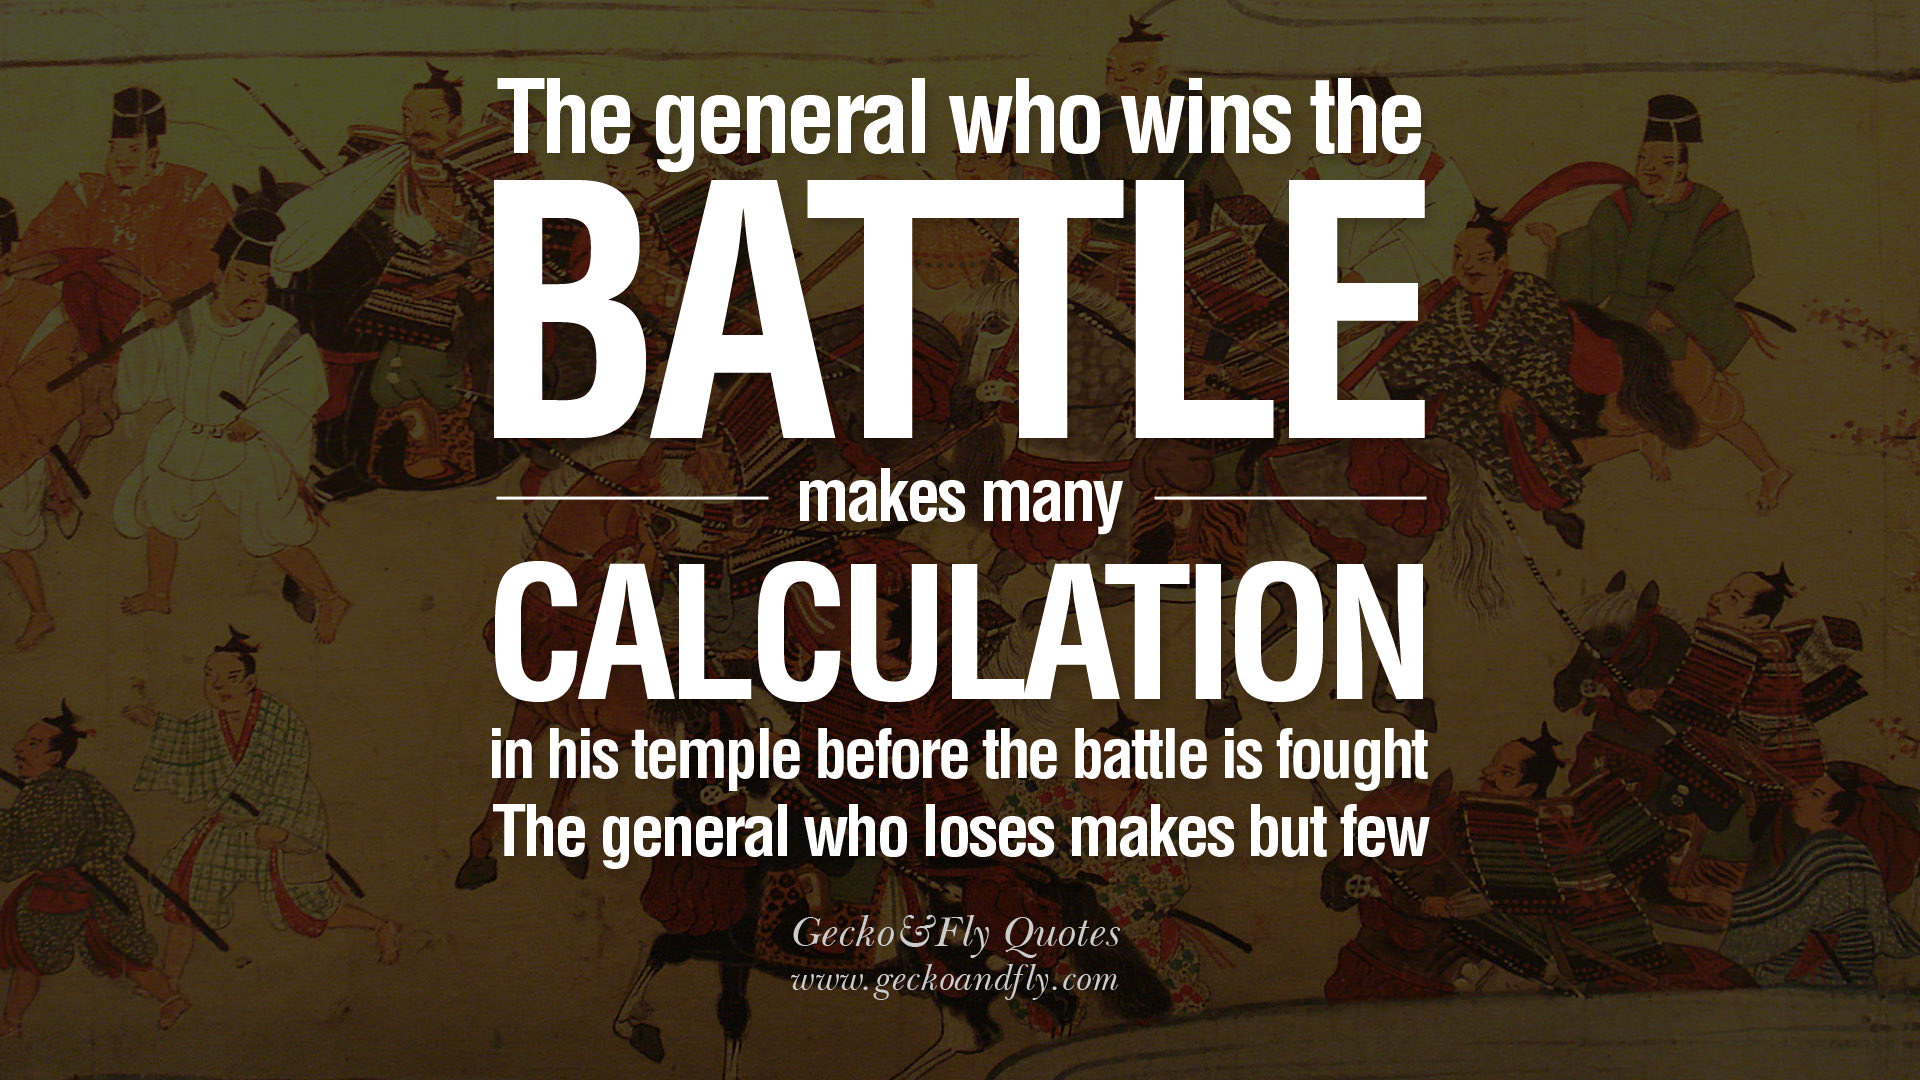 Famous War Quotes Sun Tzu. QuotesGram